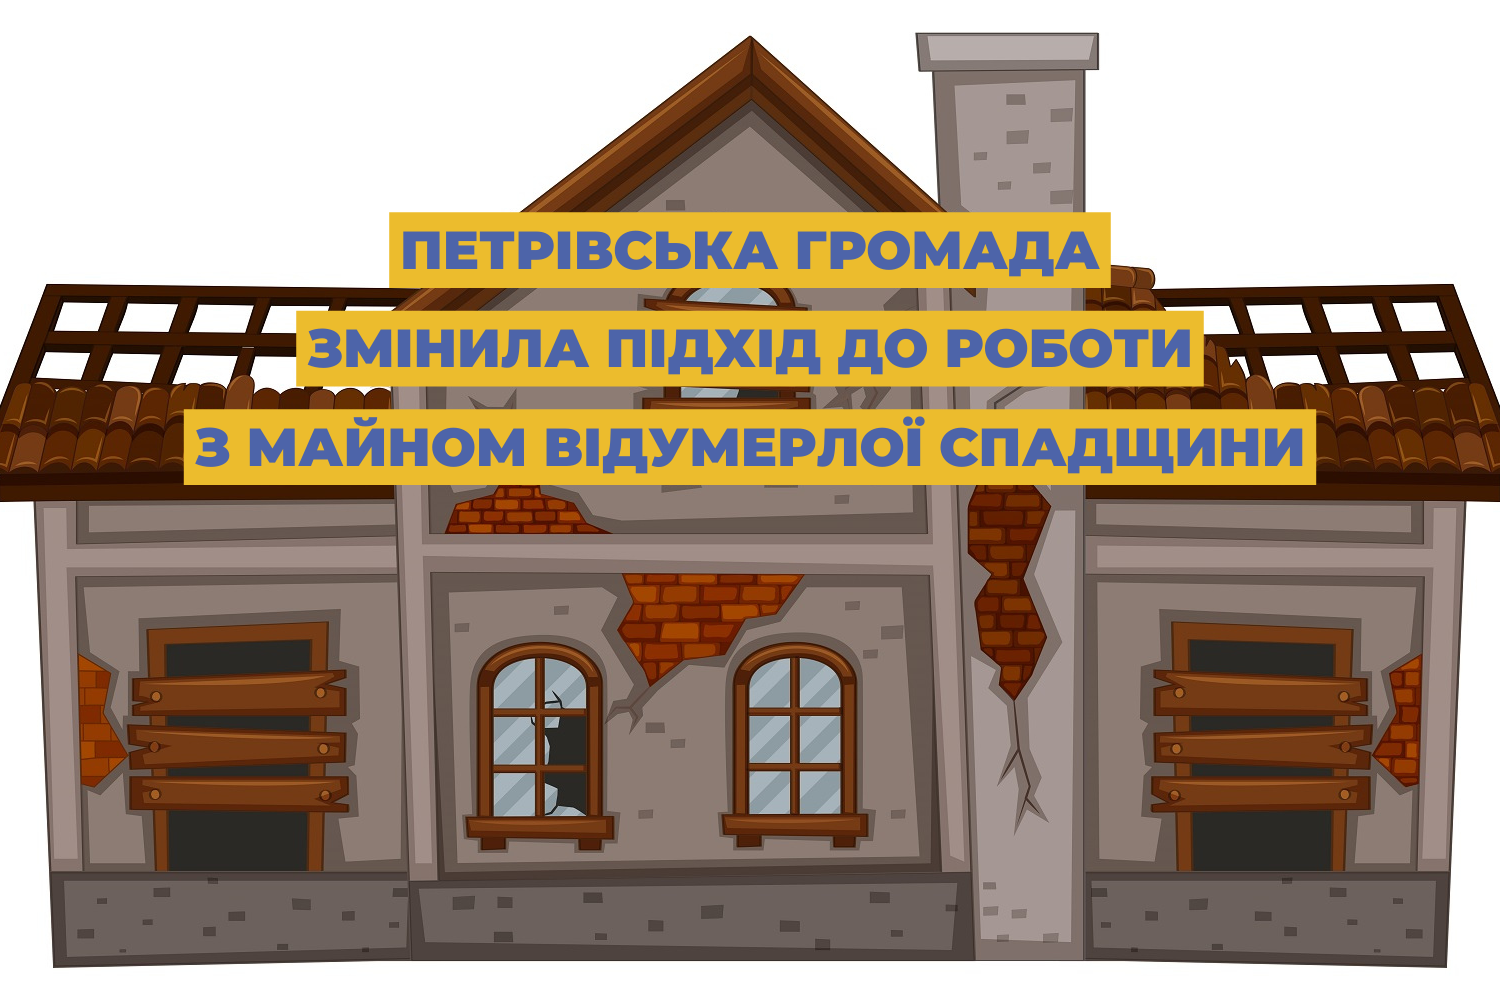 Петрівська громада змінила підхід до роботи з майном відумерлої спадщини